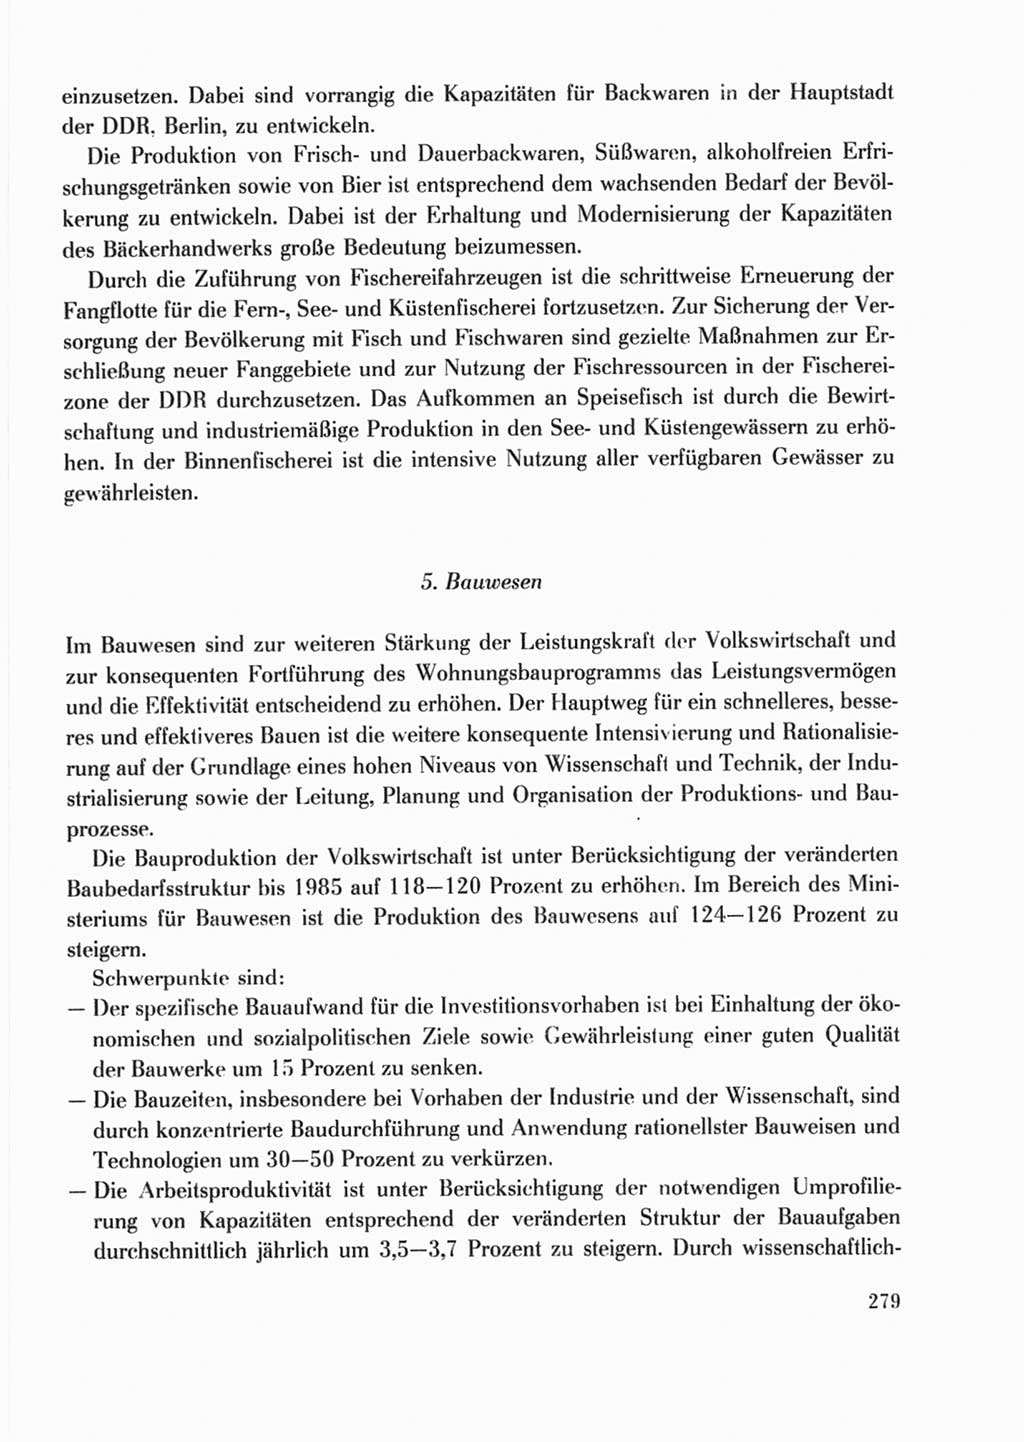 Protokoll der Verhandlungen des Ⅹ. Parteitages der Sozialistischen Einheitspartei Deutschlands (SED) [Deutsche Demokratische Republik (DDR)] 1981, Band 2, Seite 279 (Prot. Verh. Ⅹ. PT SED DDR 1981, Bd. 2, S. 279)